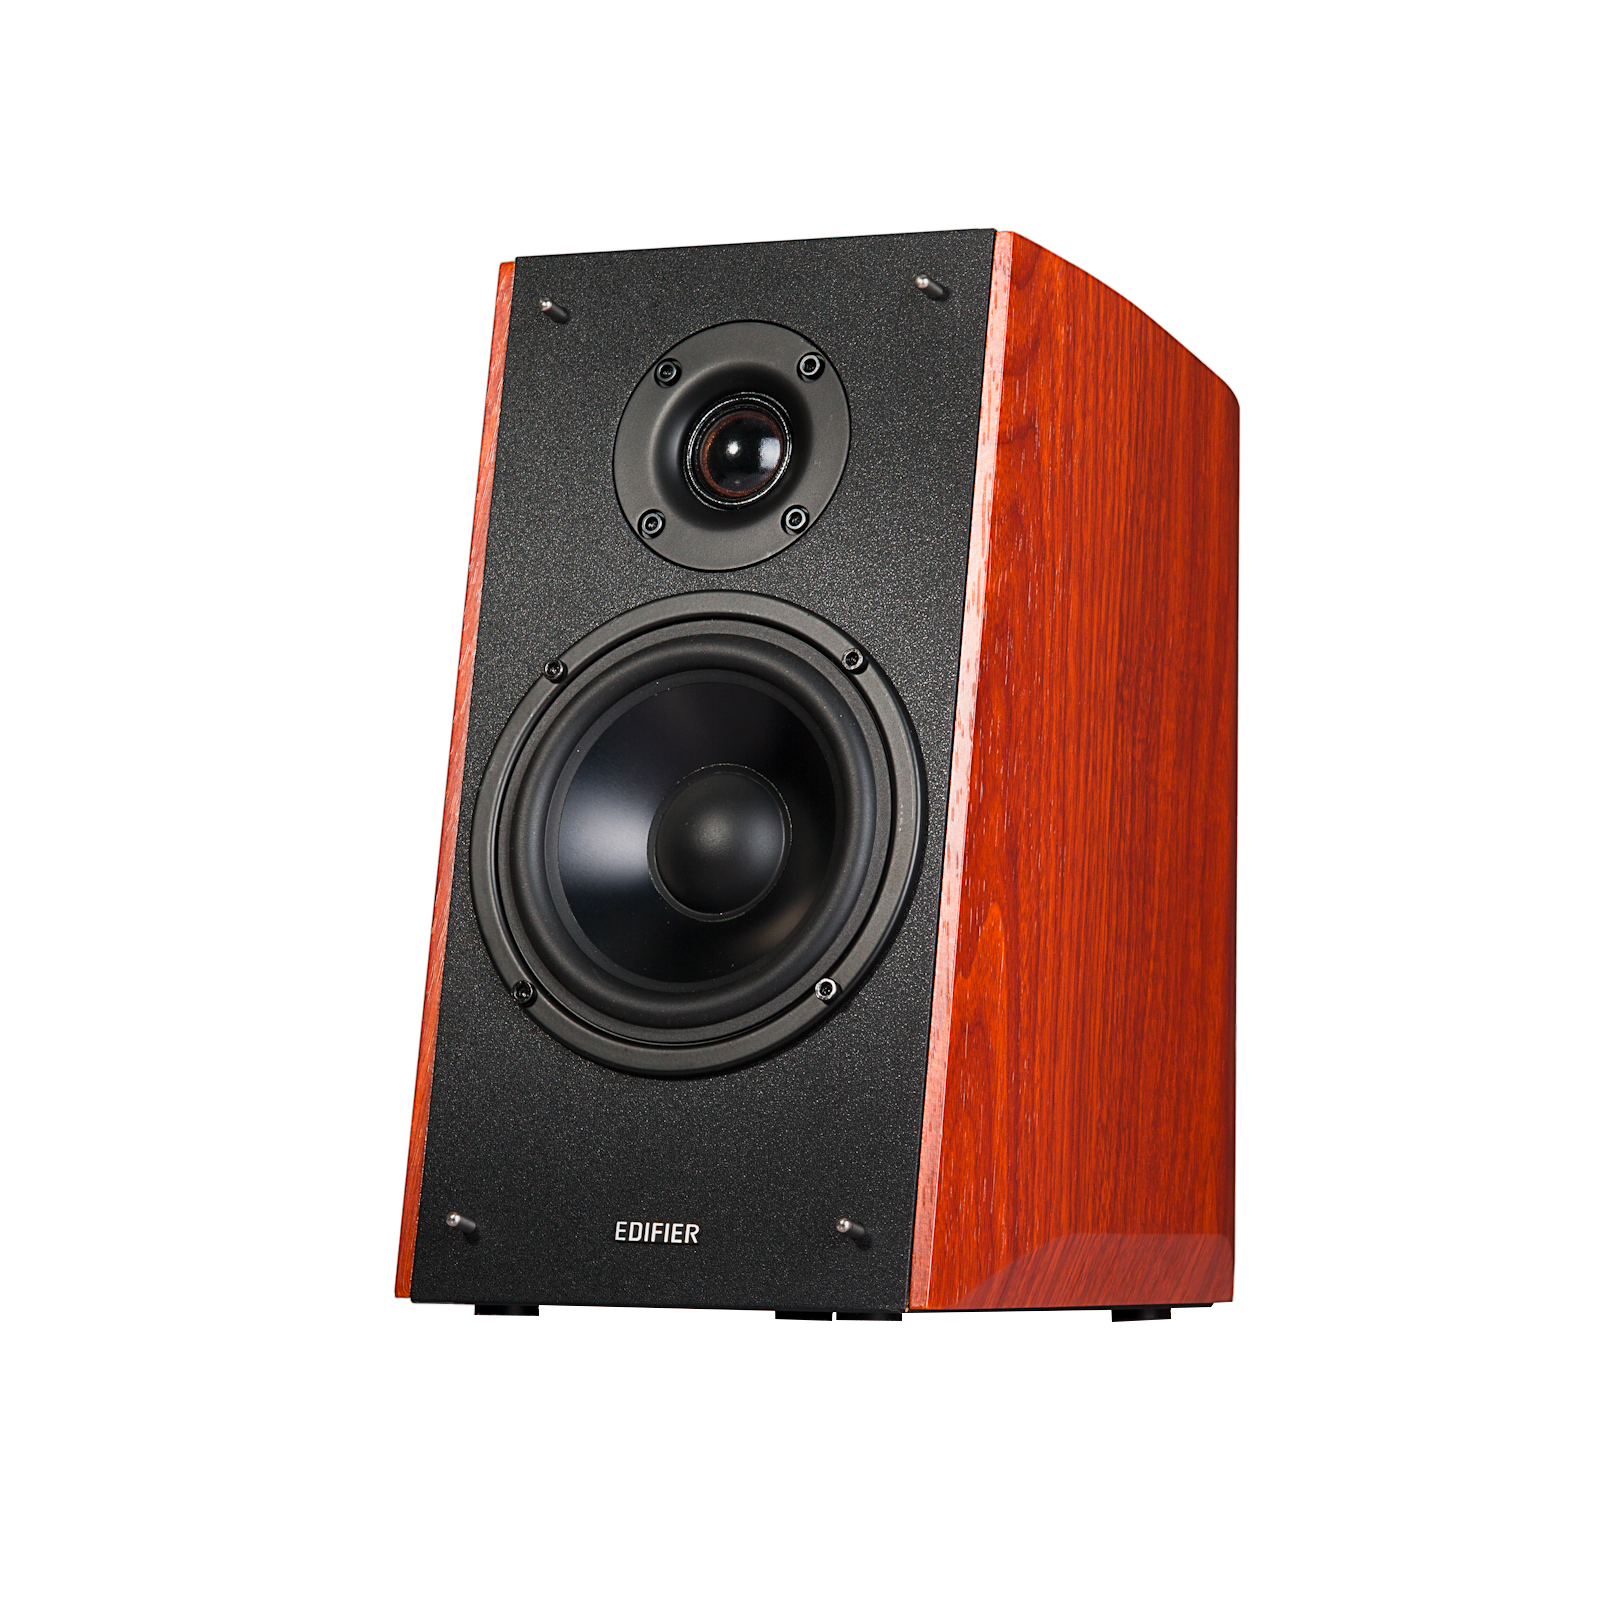 R2000DB Versatile speakers equipped for authentic audio